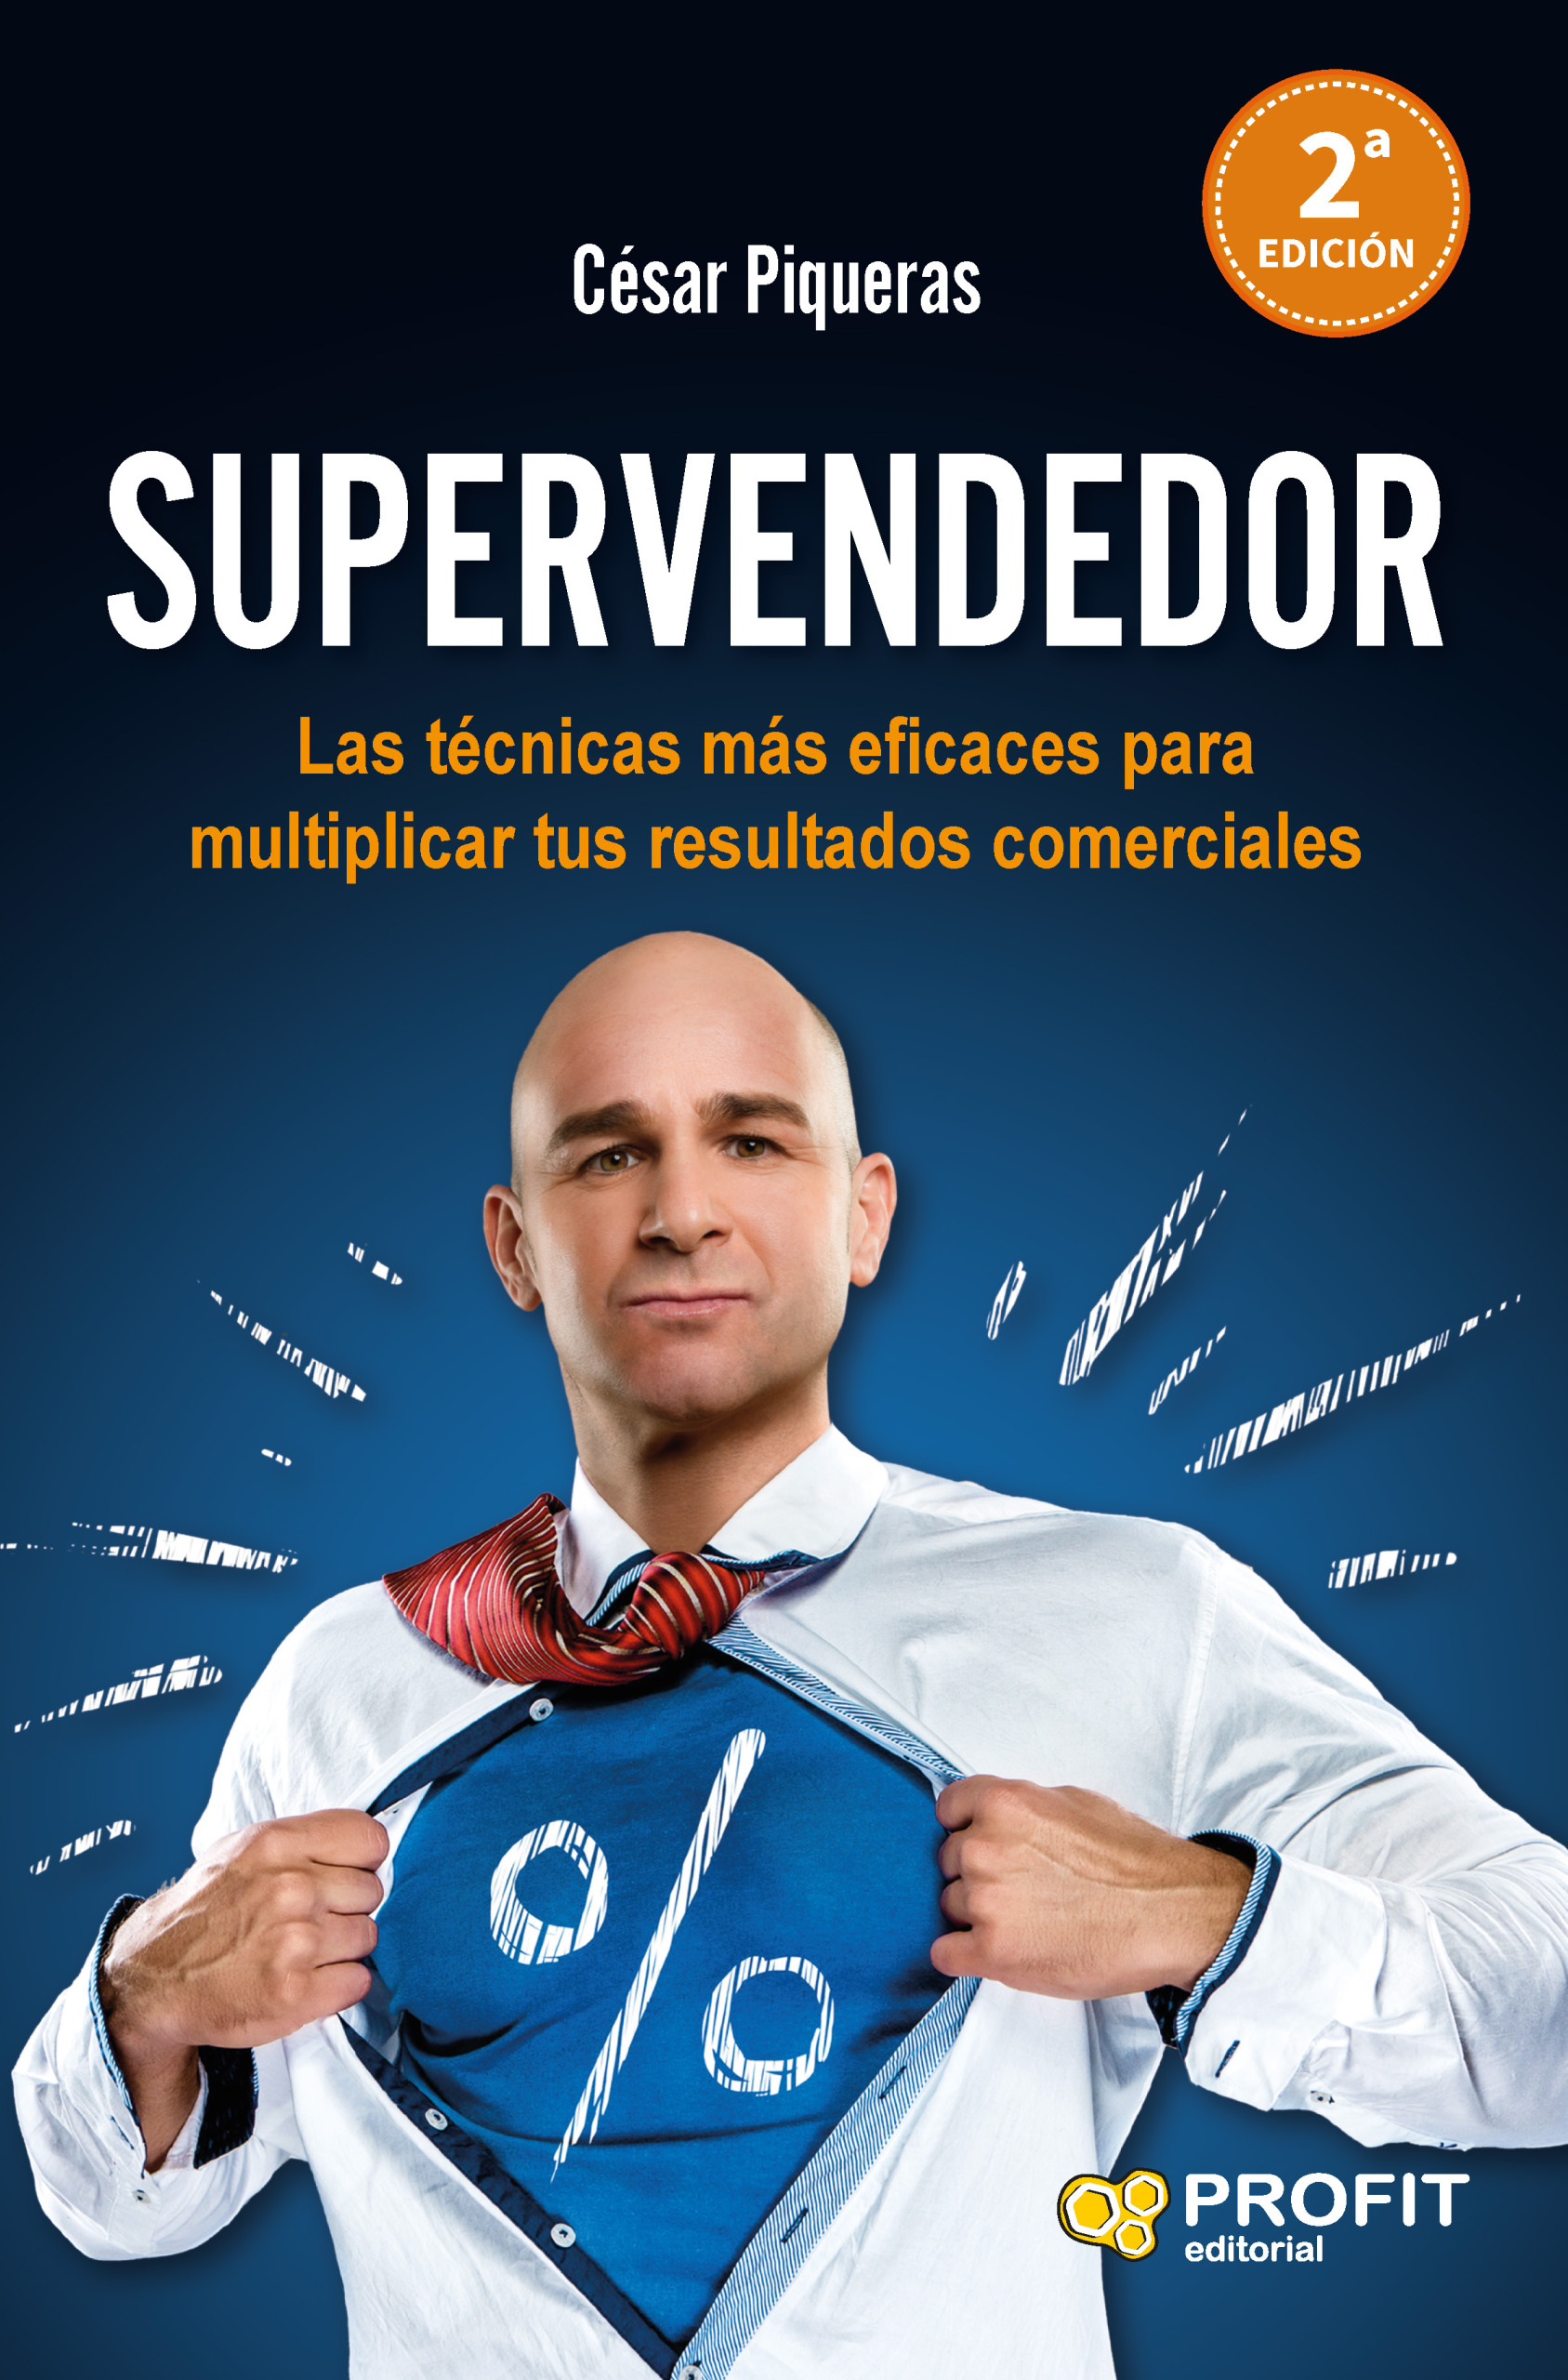 Supervendedor | César Piqueras | Libros de superación